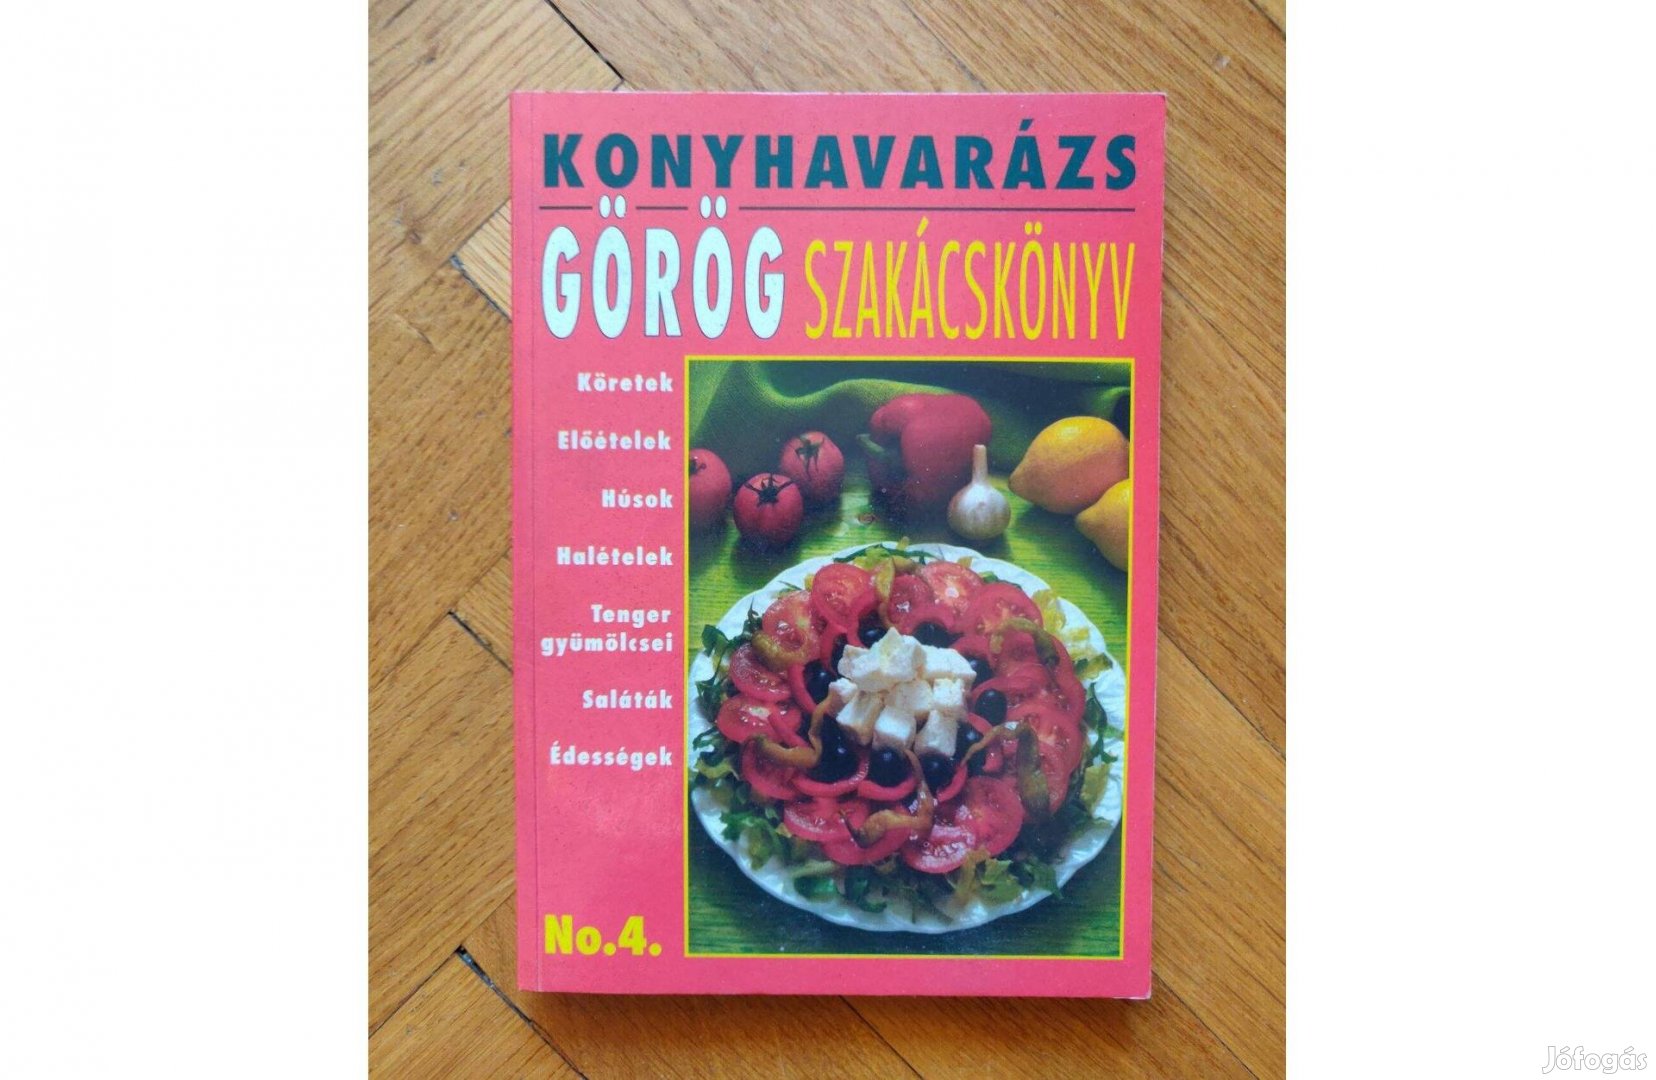 Konyhavarázs görög szakácskönyv